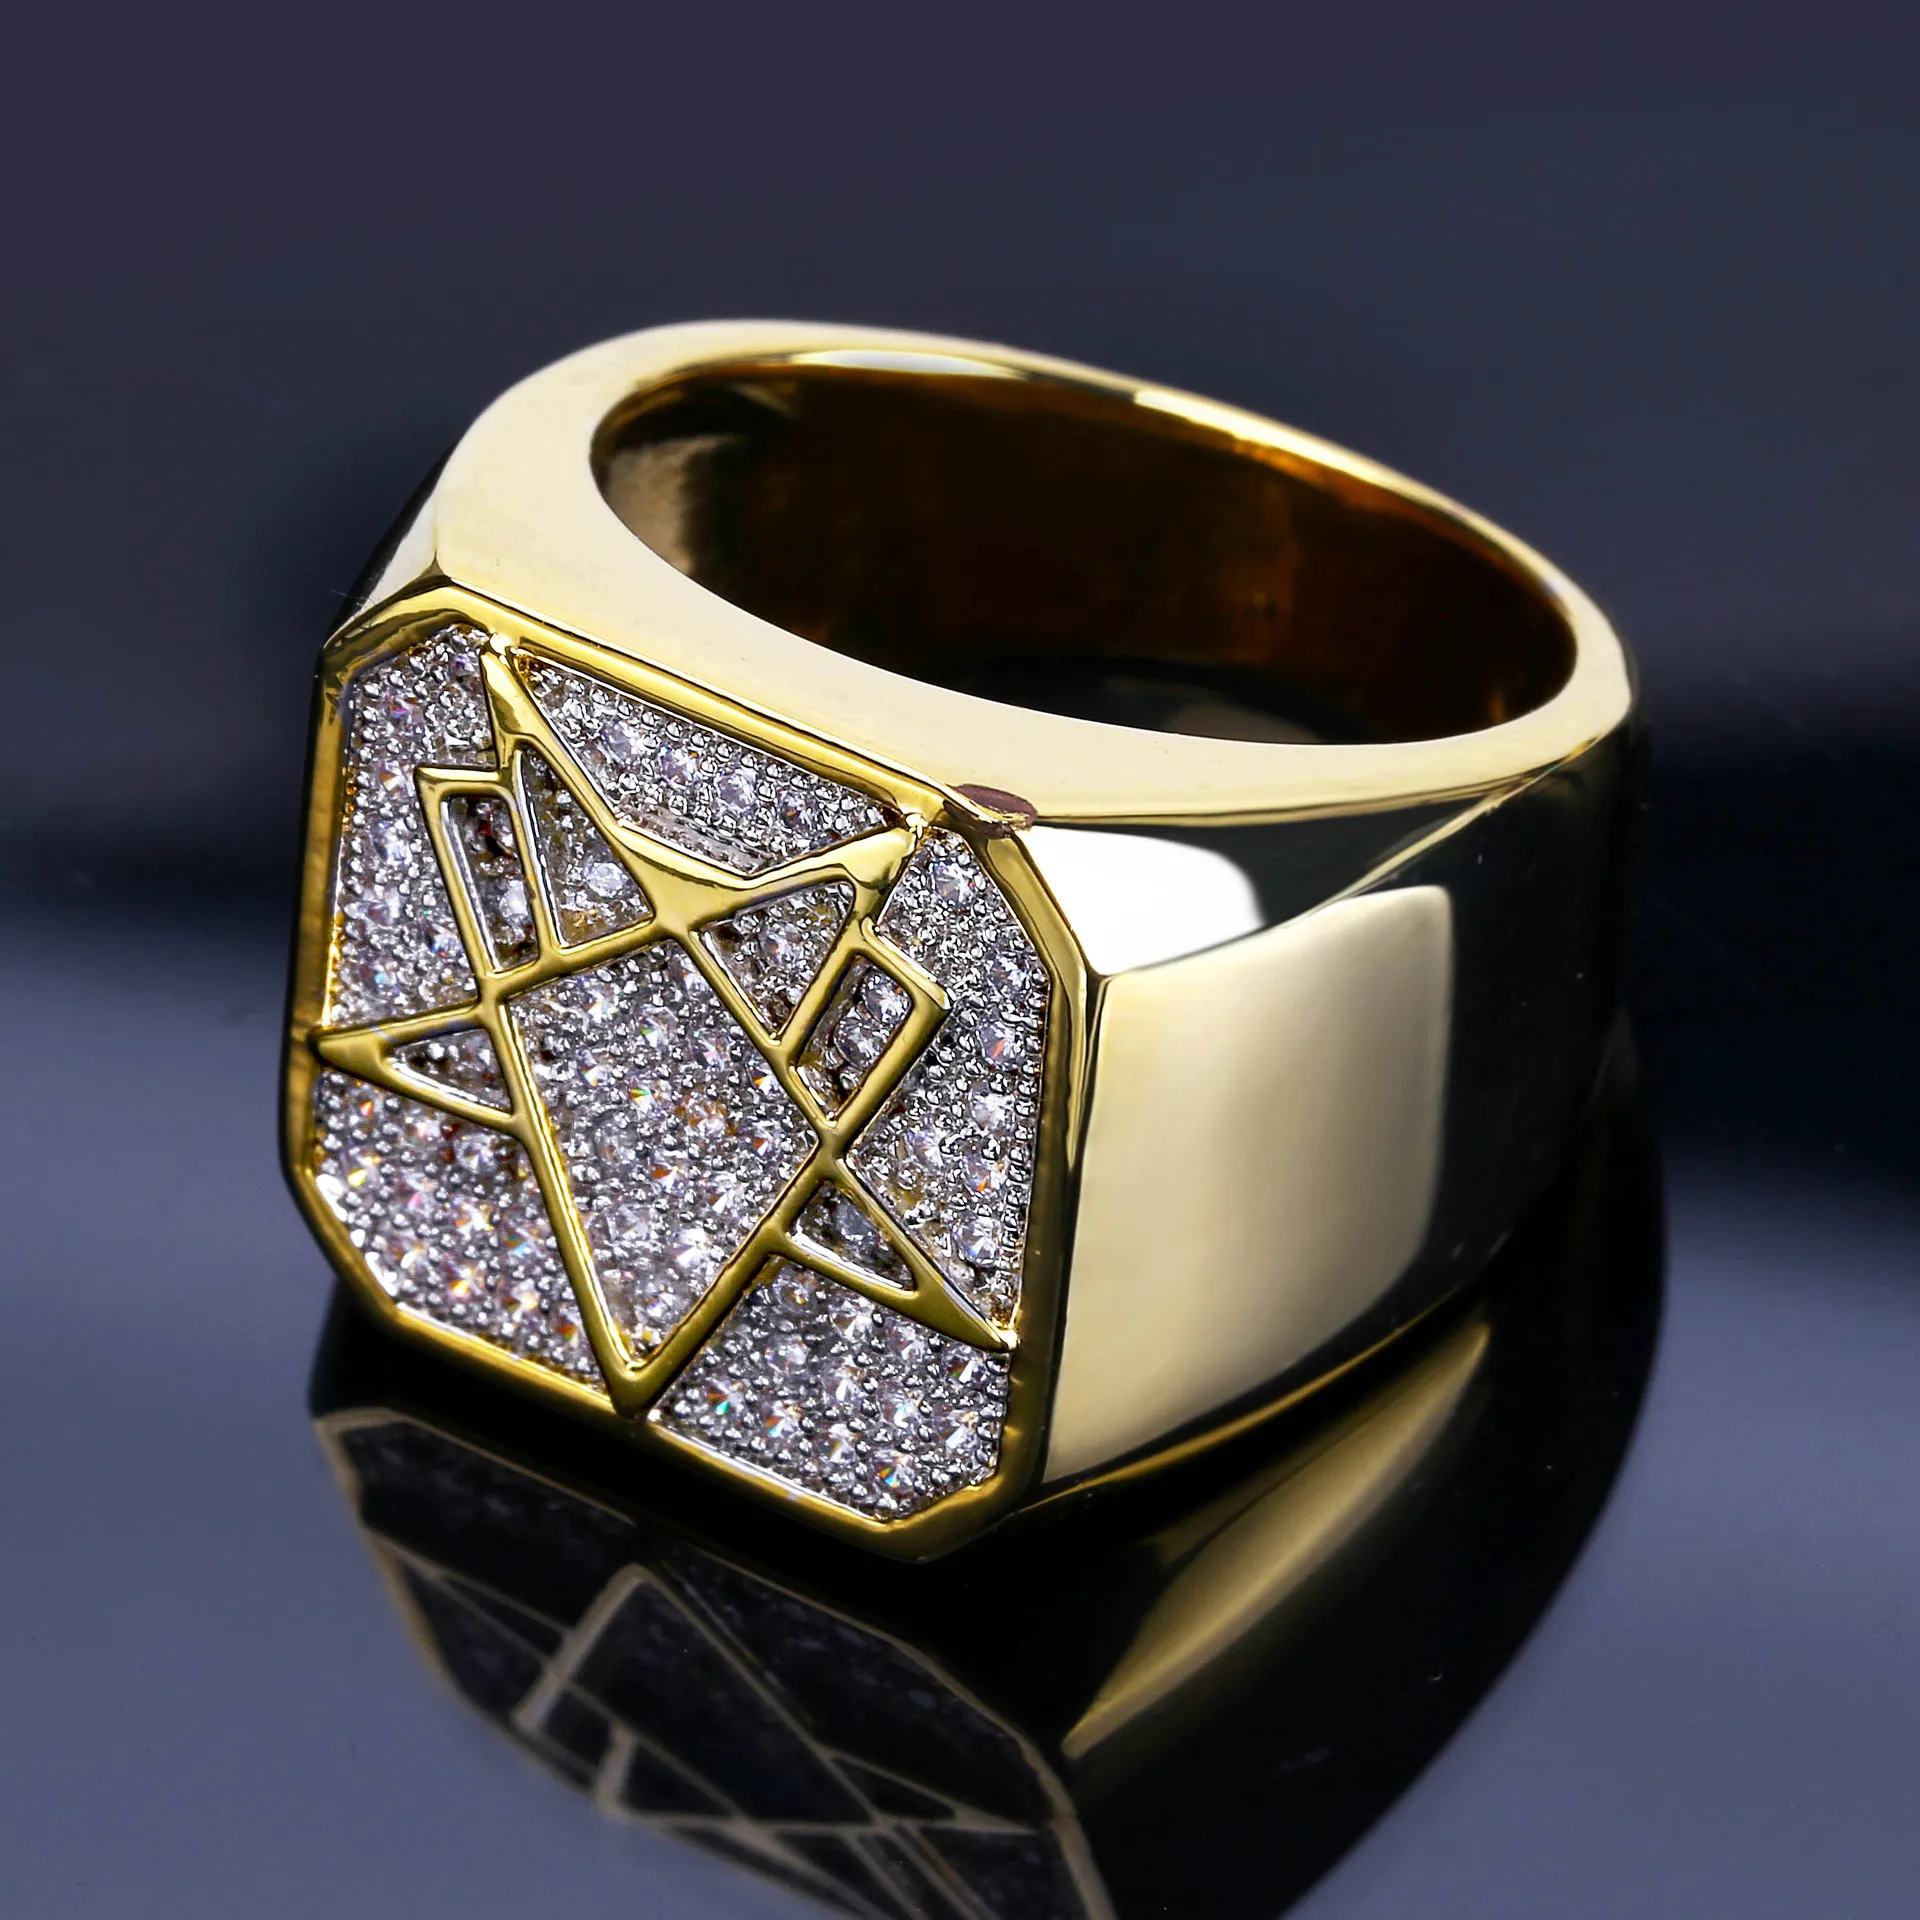 남성 도매를위한 18K 골드 화이트 CZ 큐빅 지르코니아 디자이너 기하학적 링 밴드 힙합 전체 다이아몬드 아이스 아웃 연인 반지 보석 선물